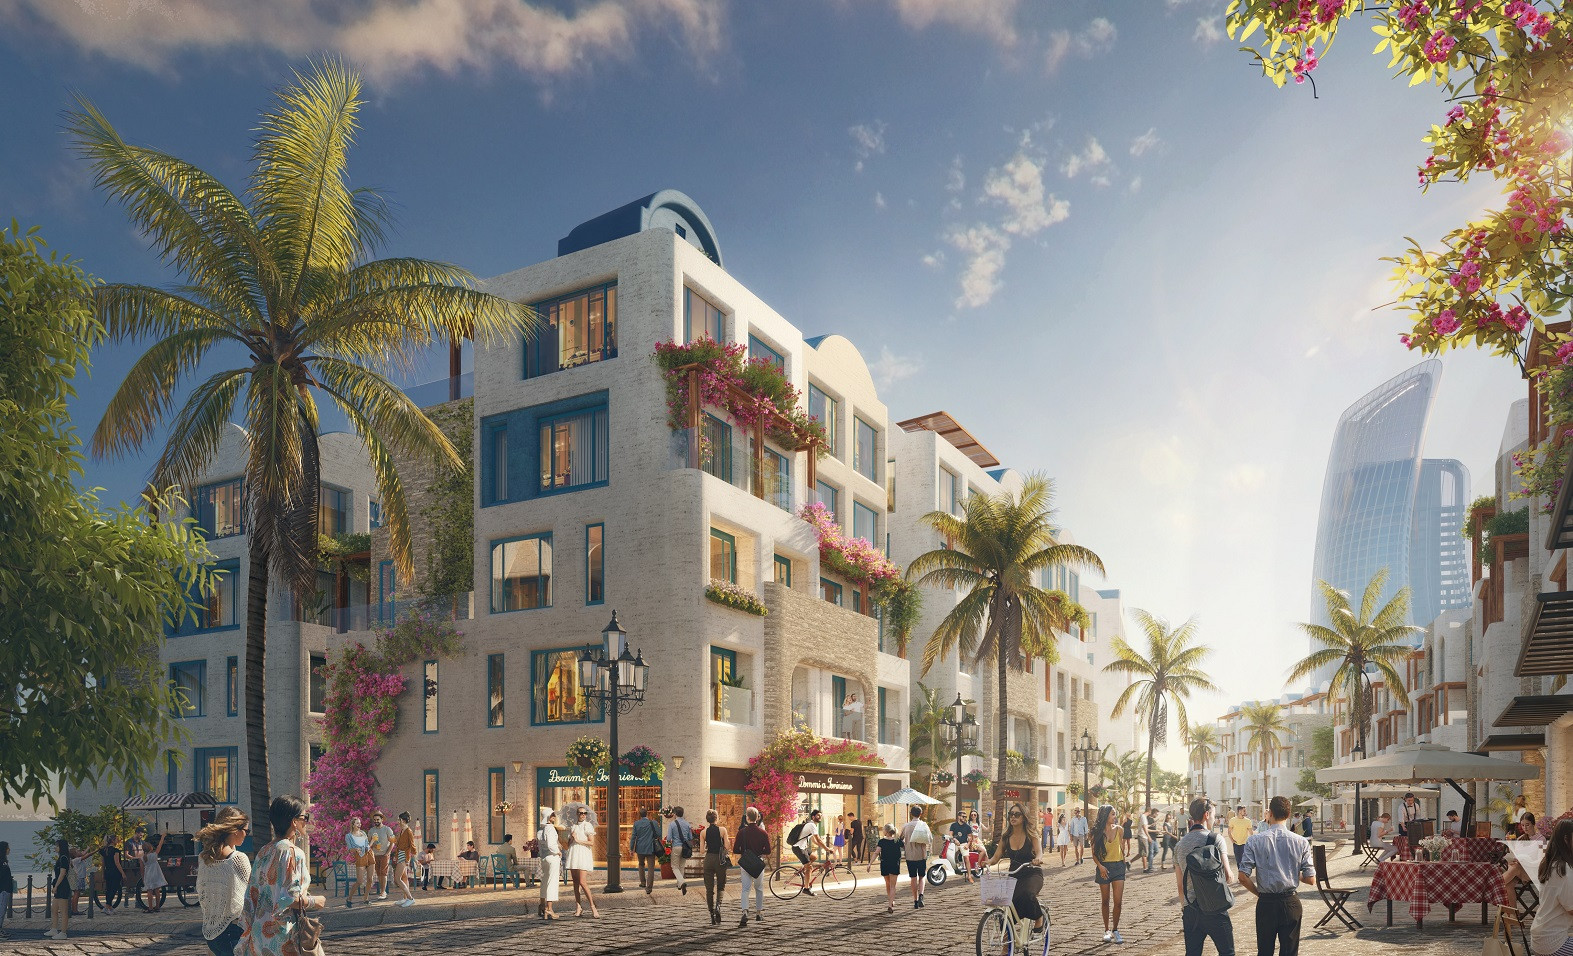 Chuỗi Commercial Villa tại Hon Thom Paradise Island hứa hẹn đem lại tiềm năng khai thác thương mại đầy hấp dẫn. Ảnh phối cảnh minh họa Sun Property.